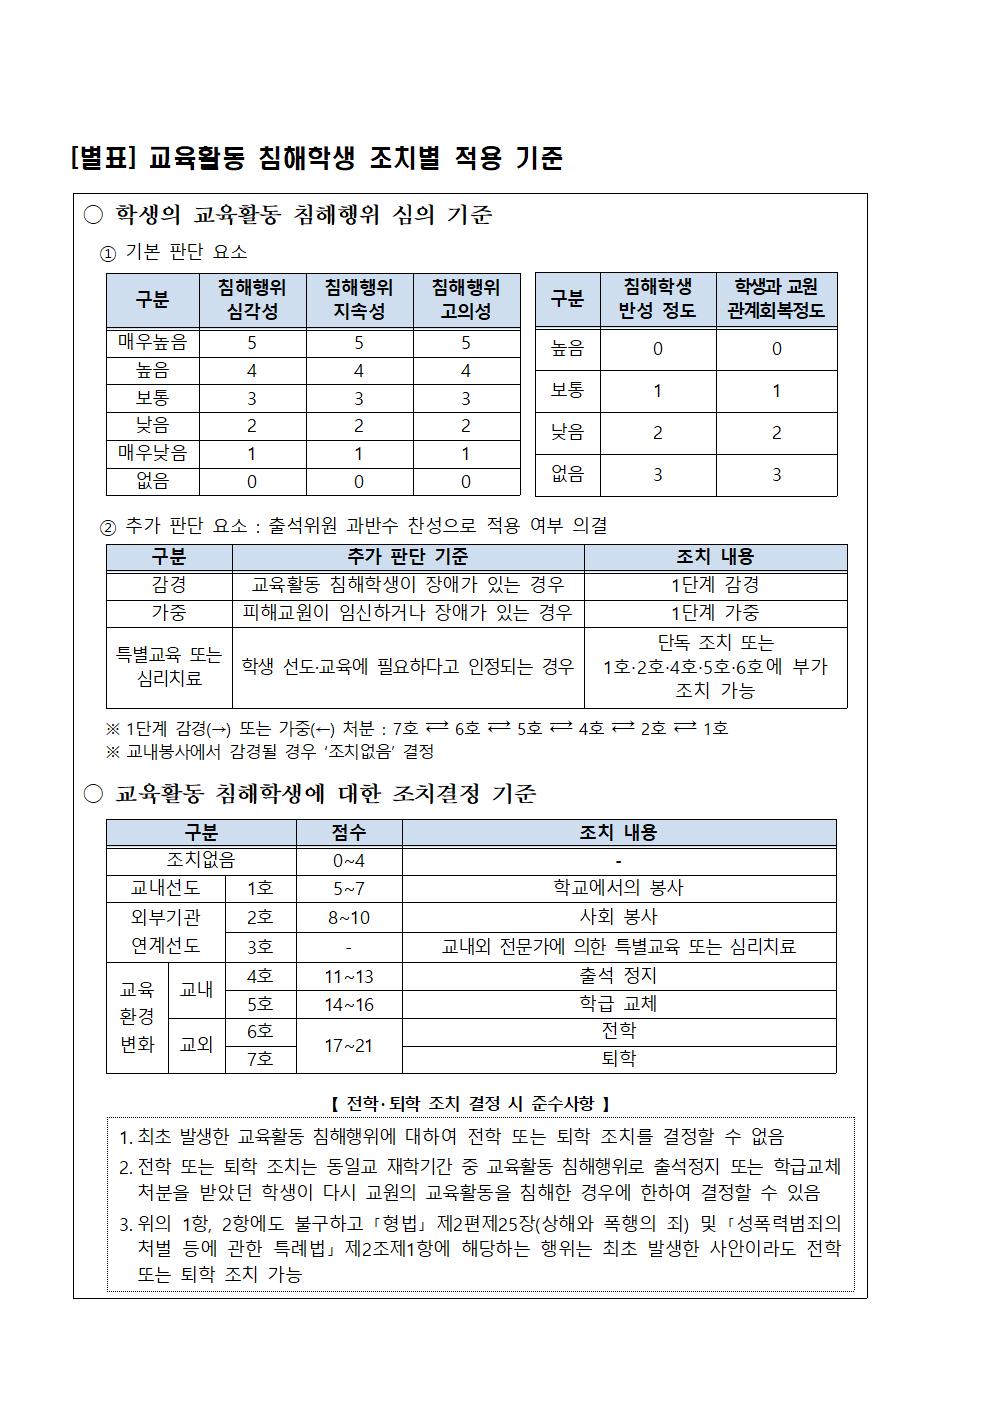 21-91교육활동 침해 예방교육 안내장002